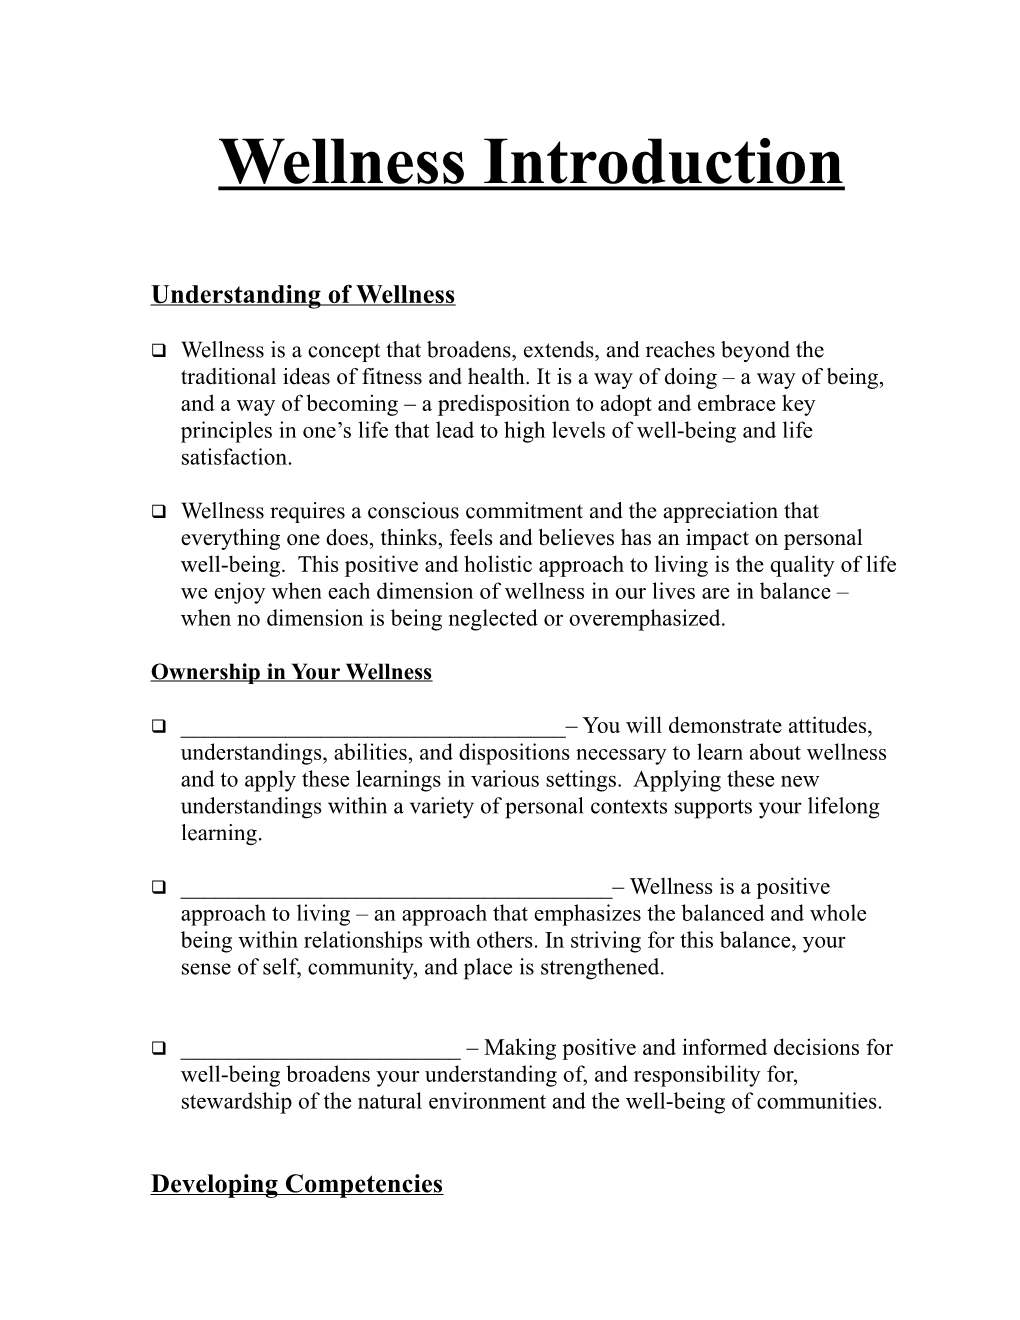 Understanding of Wellness